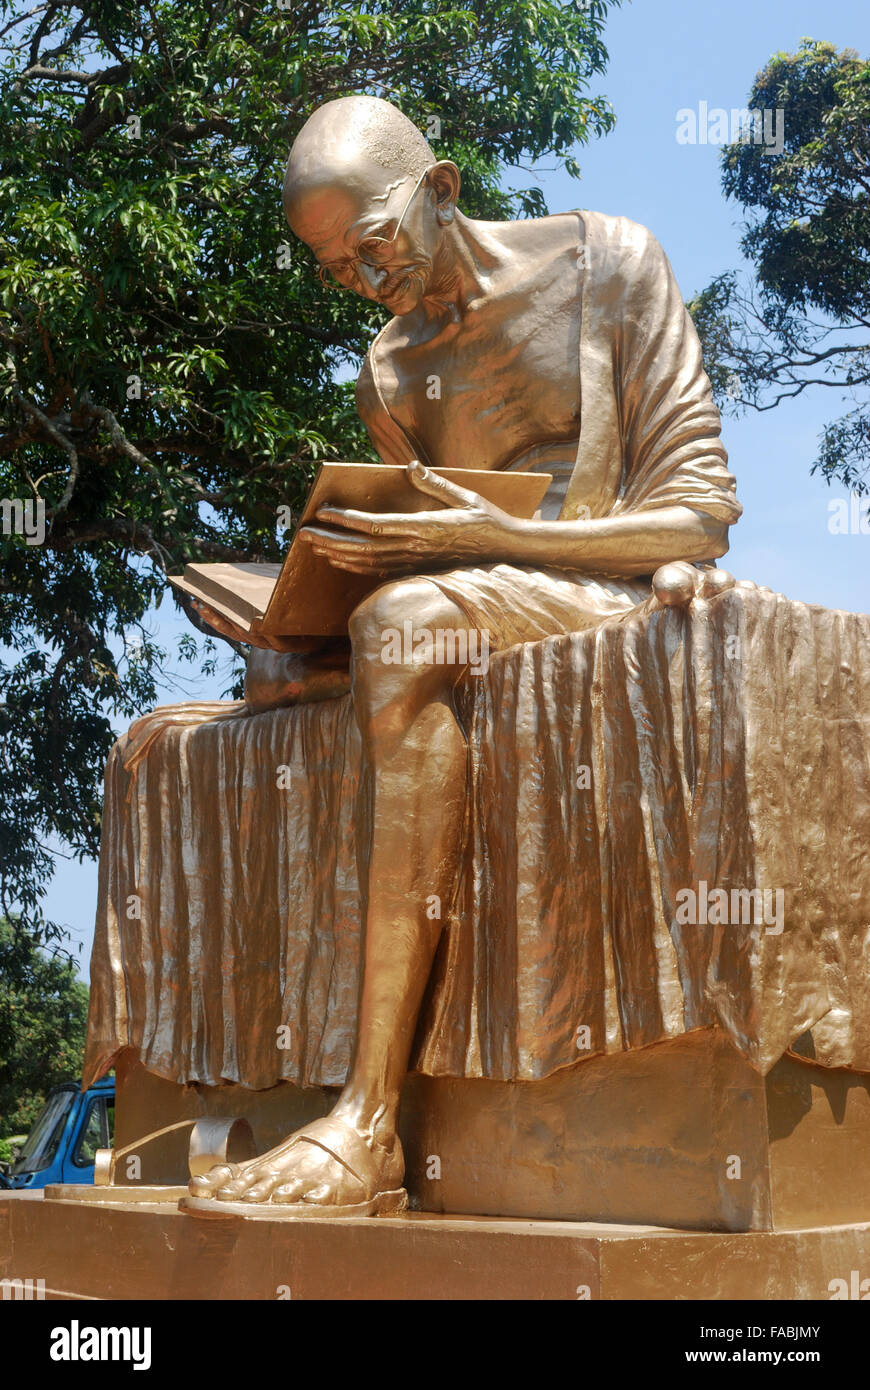 Estatua dorada de Gandhi en el parque Gandhi en Port Blair, Islas Andaman,india.Este parque público es un lugar turístico en Port Blair. Foto de stock